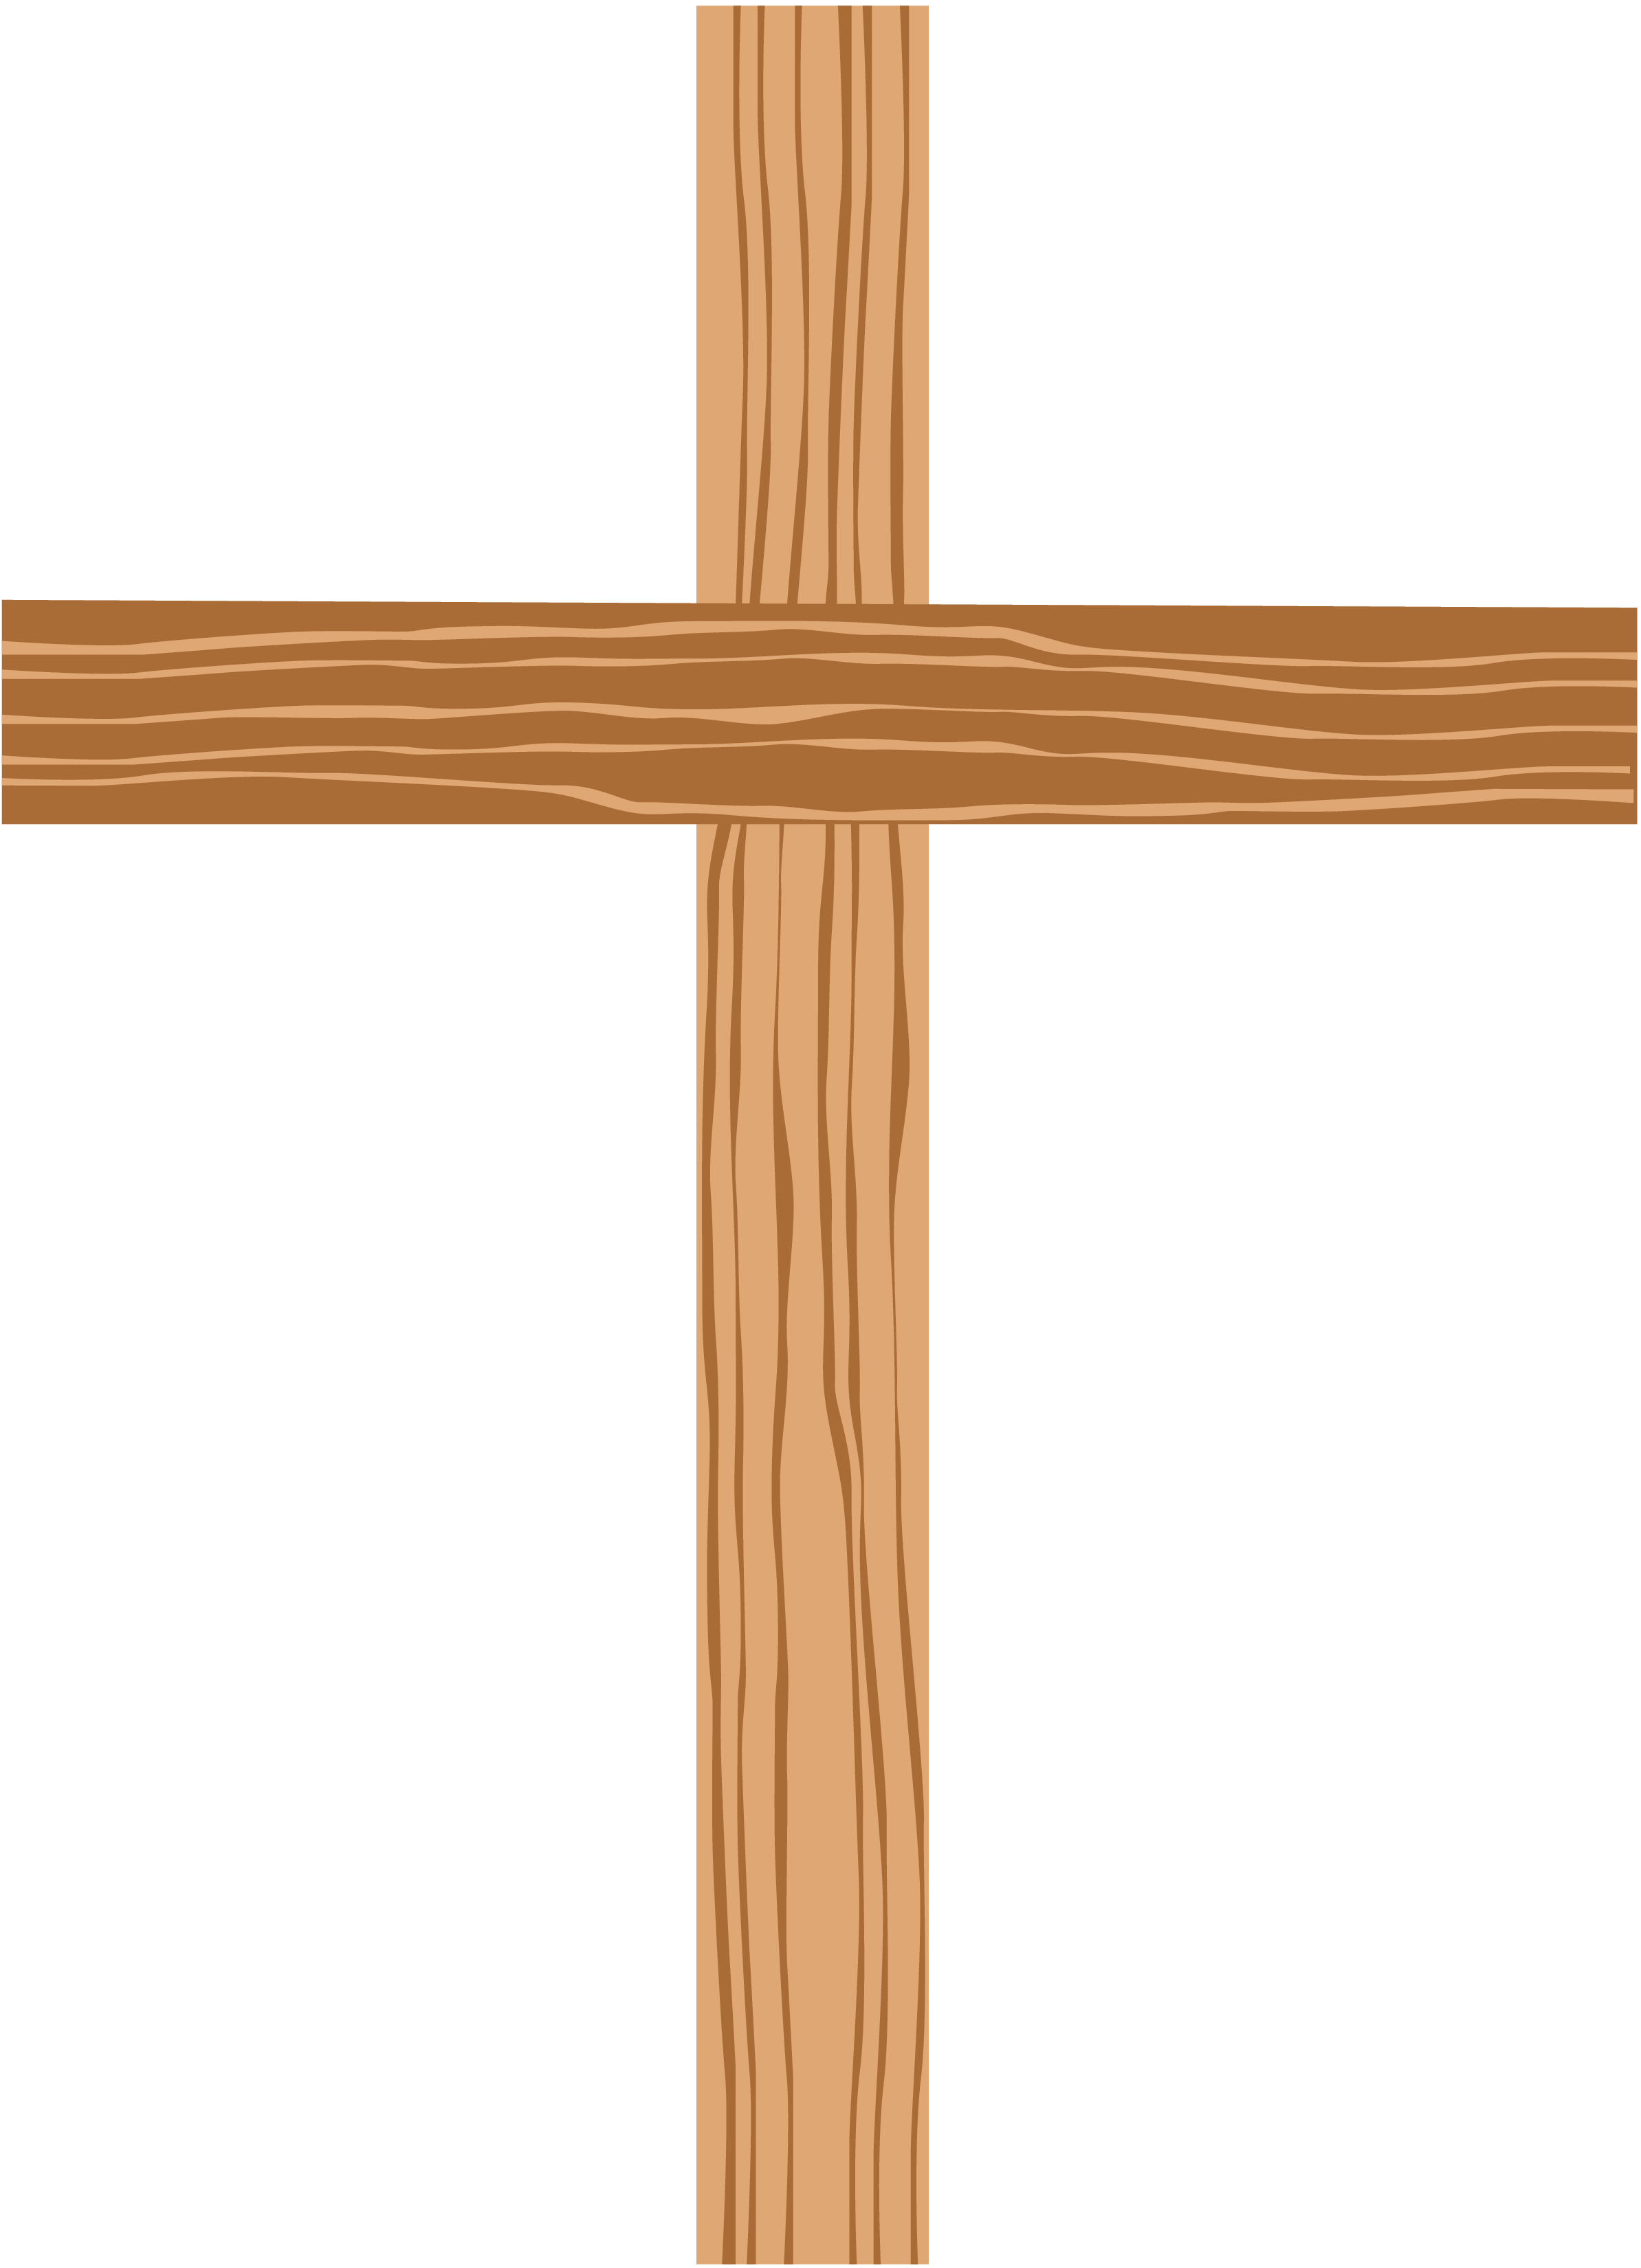 Wooden Crucifix Clip Art Cliparts